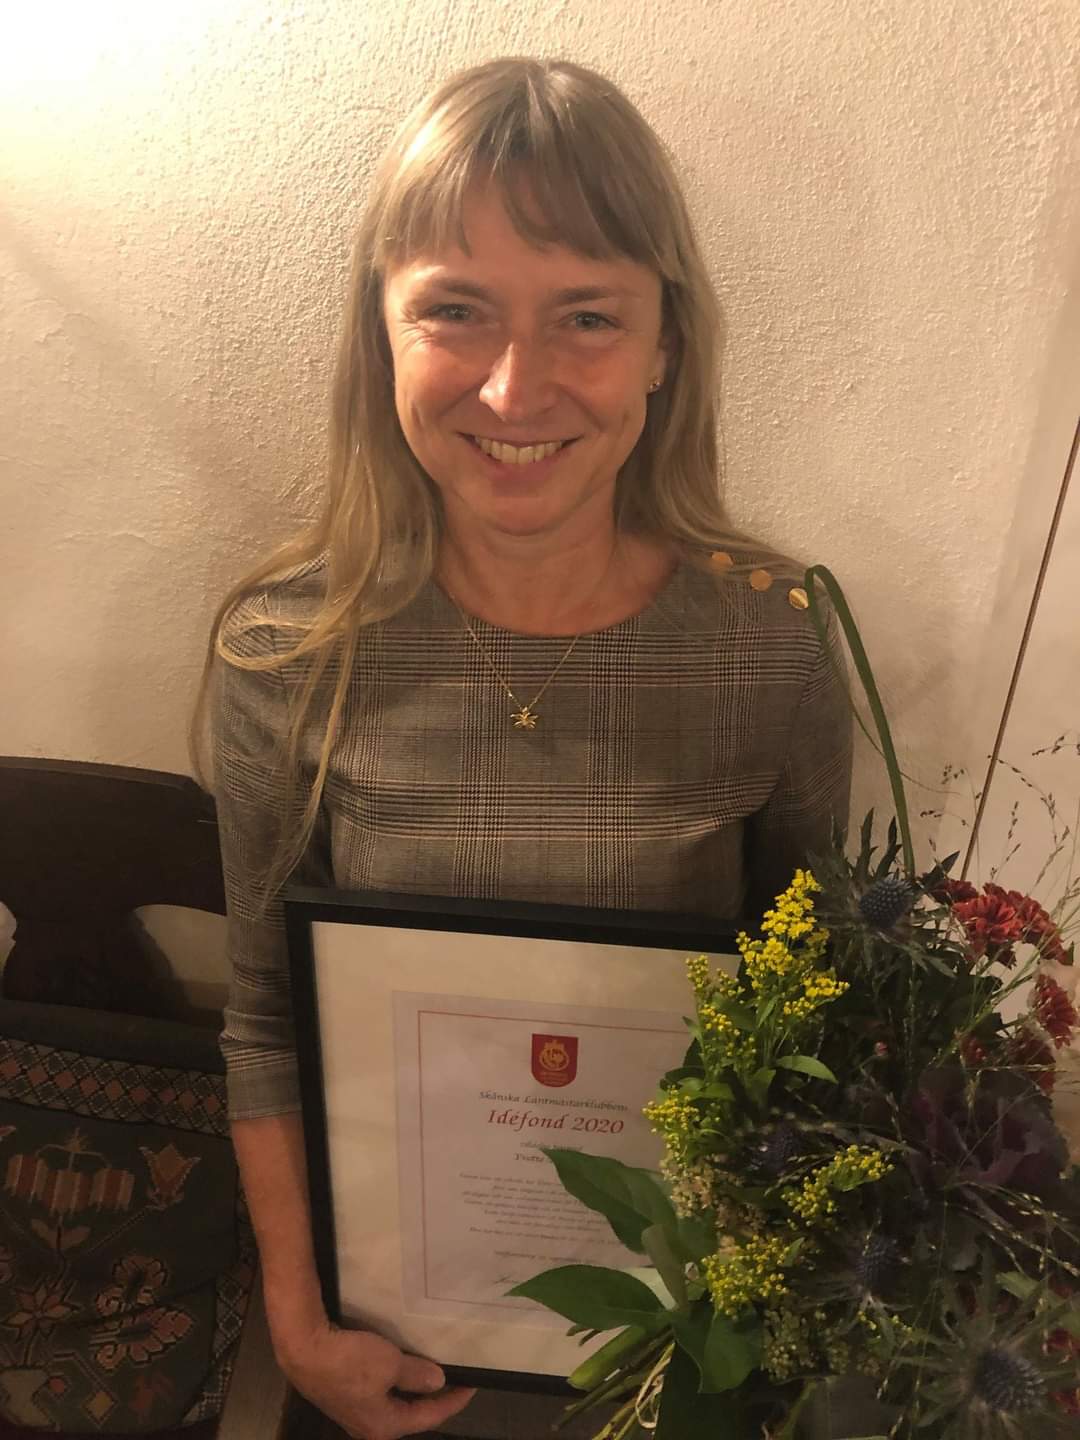 Yvette Bårring Idéfondpris